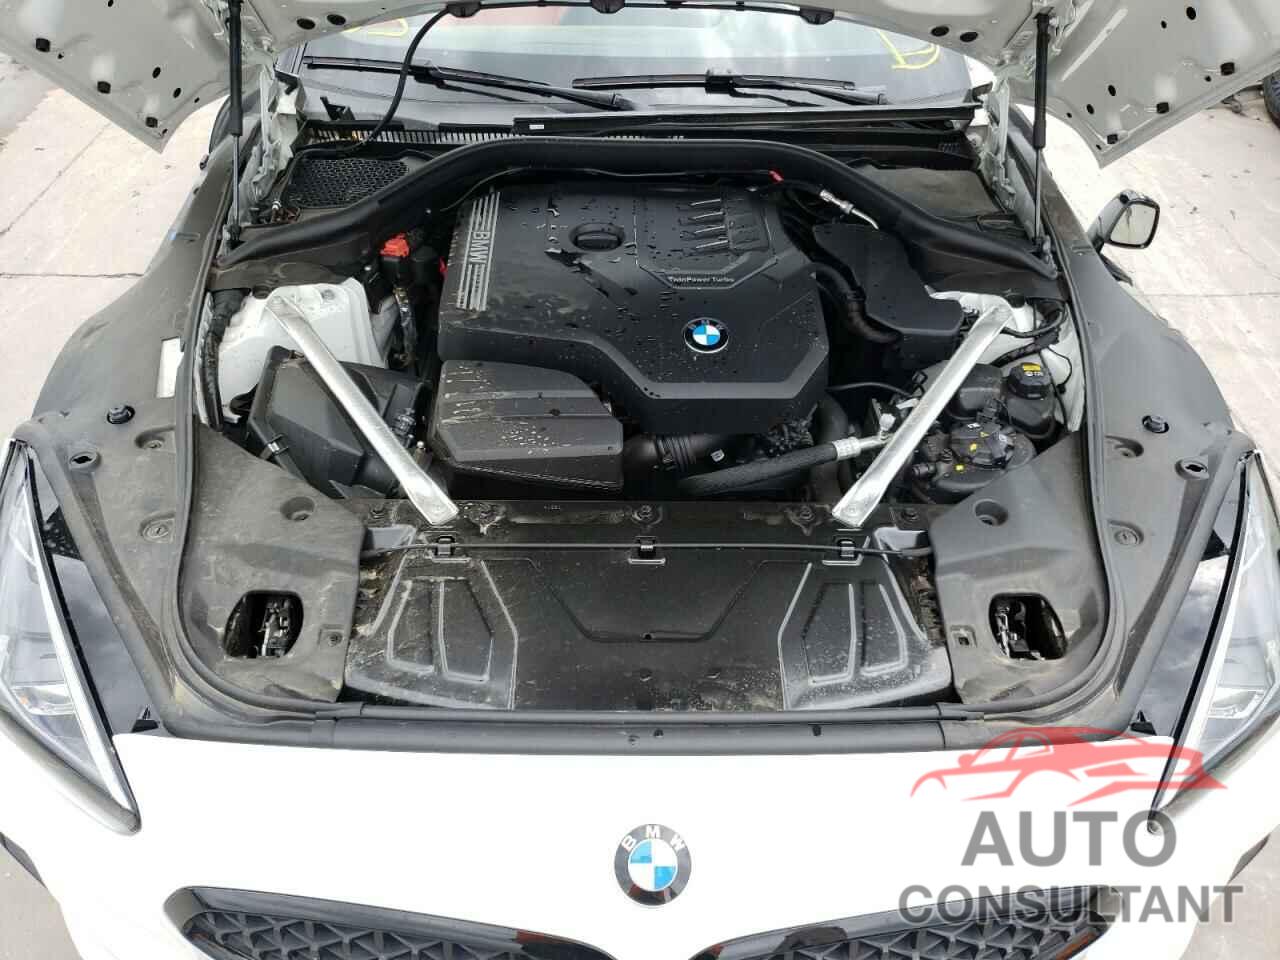 BMW Z4 2021 - WBAHF3C00MWW90458